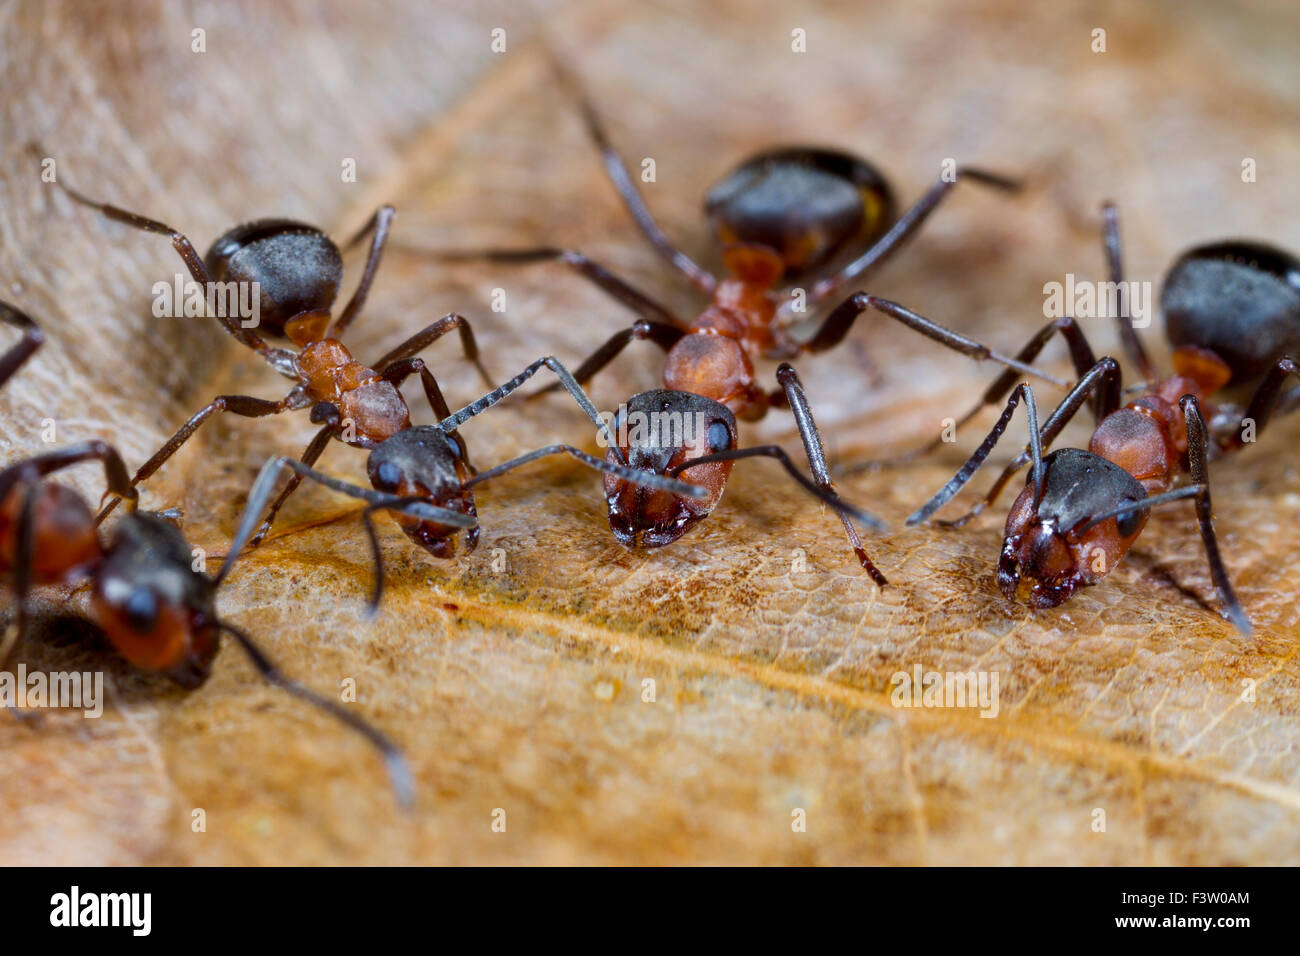 Red Wood Ameisen (Formica Rufa) Erwachsene Arbeitnehmer aus Zucker trinken Wasser Köder. Shropshire, England. April. Stockfoto